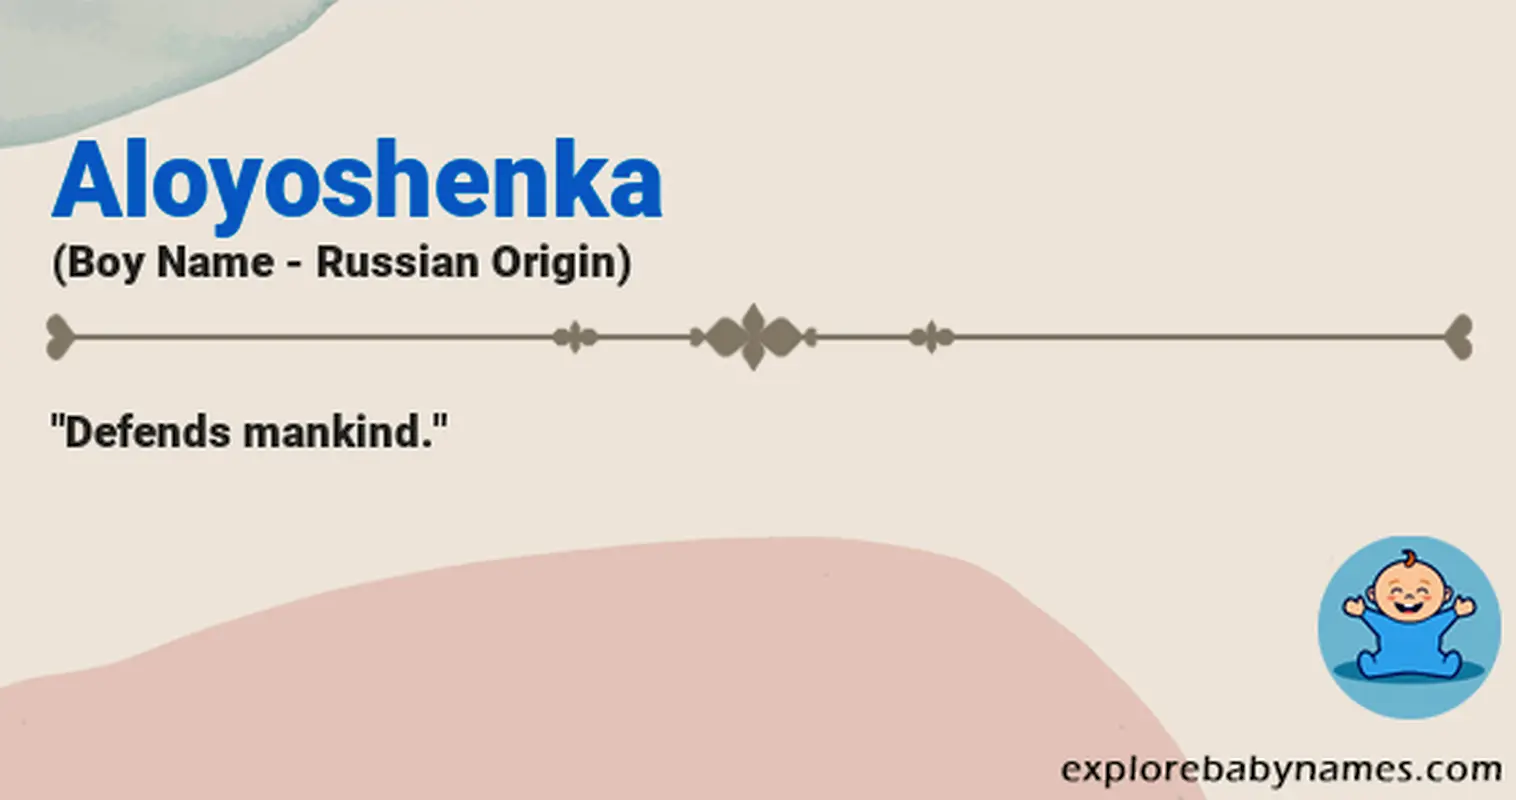 Meaning of Aloyoshenka